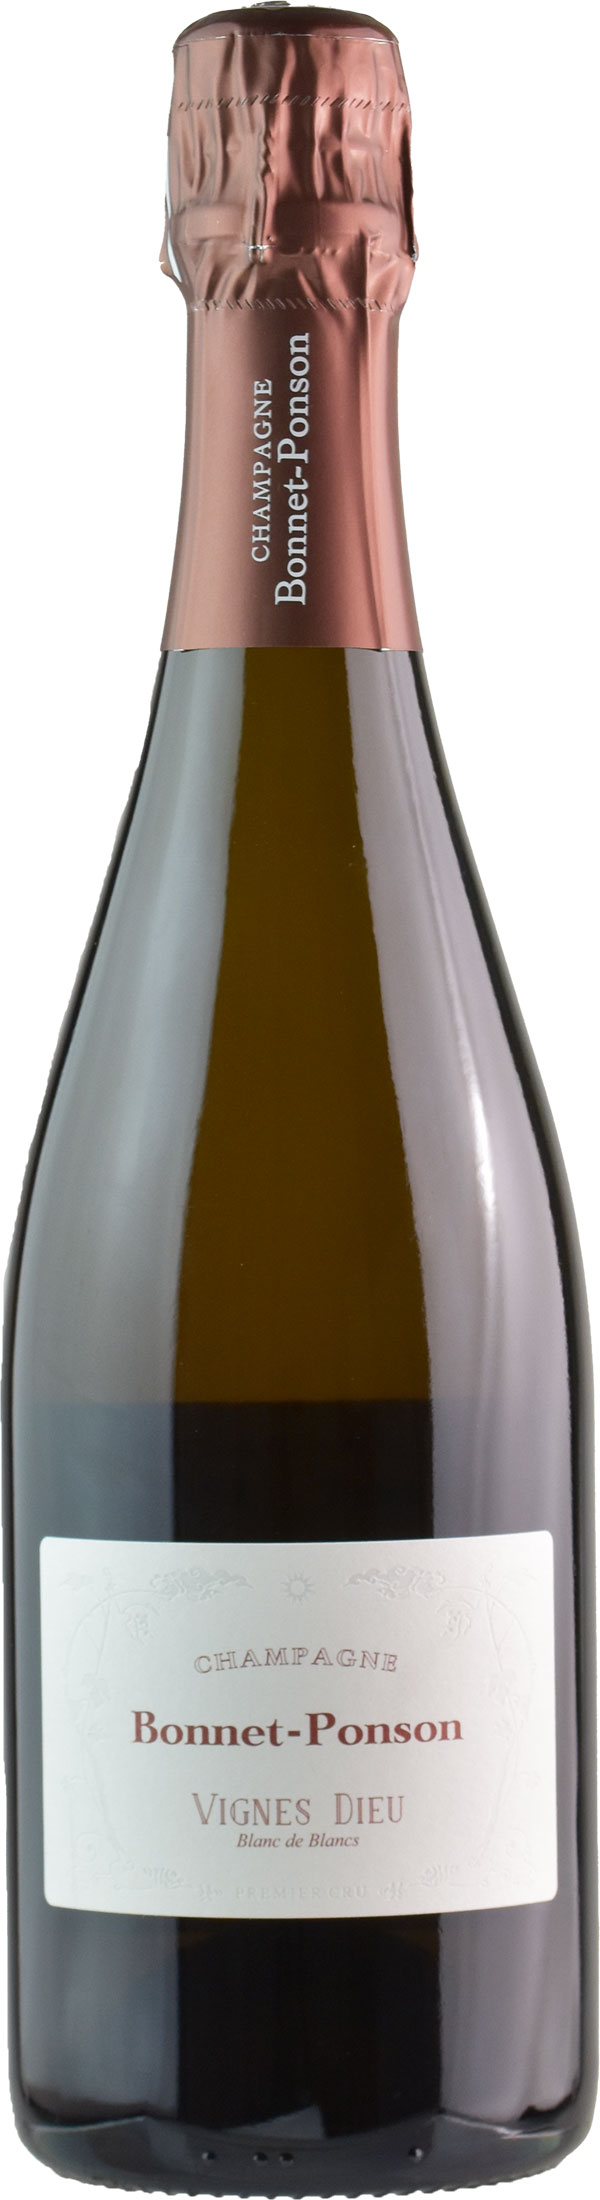 Bonnet-Ponson Champagne Blanc de Blancs Les Vigne Dieu 2012